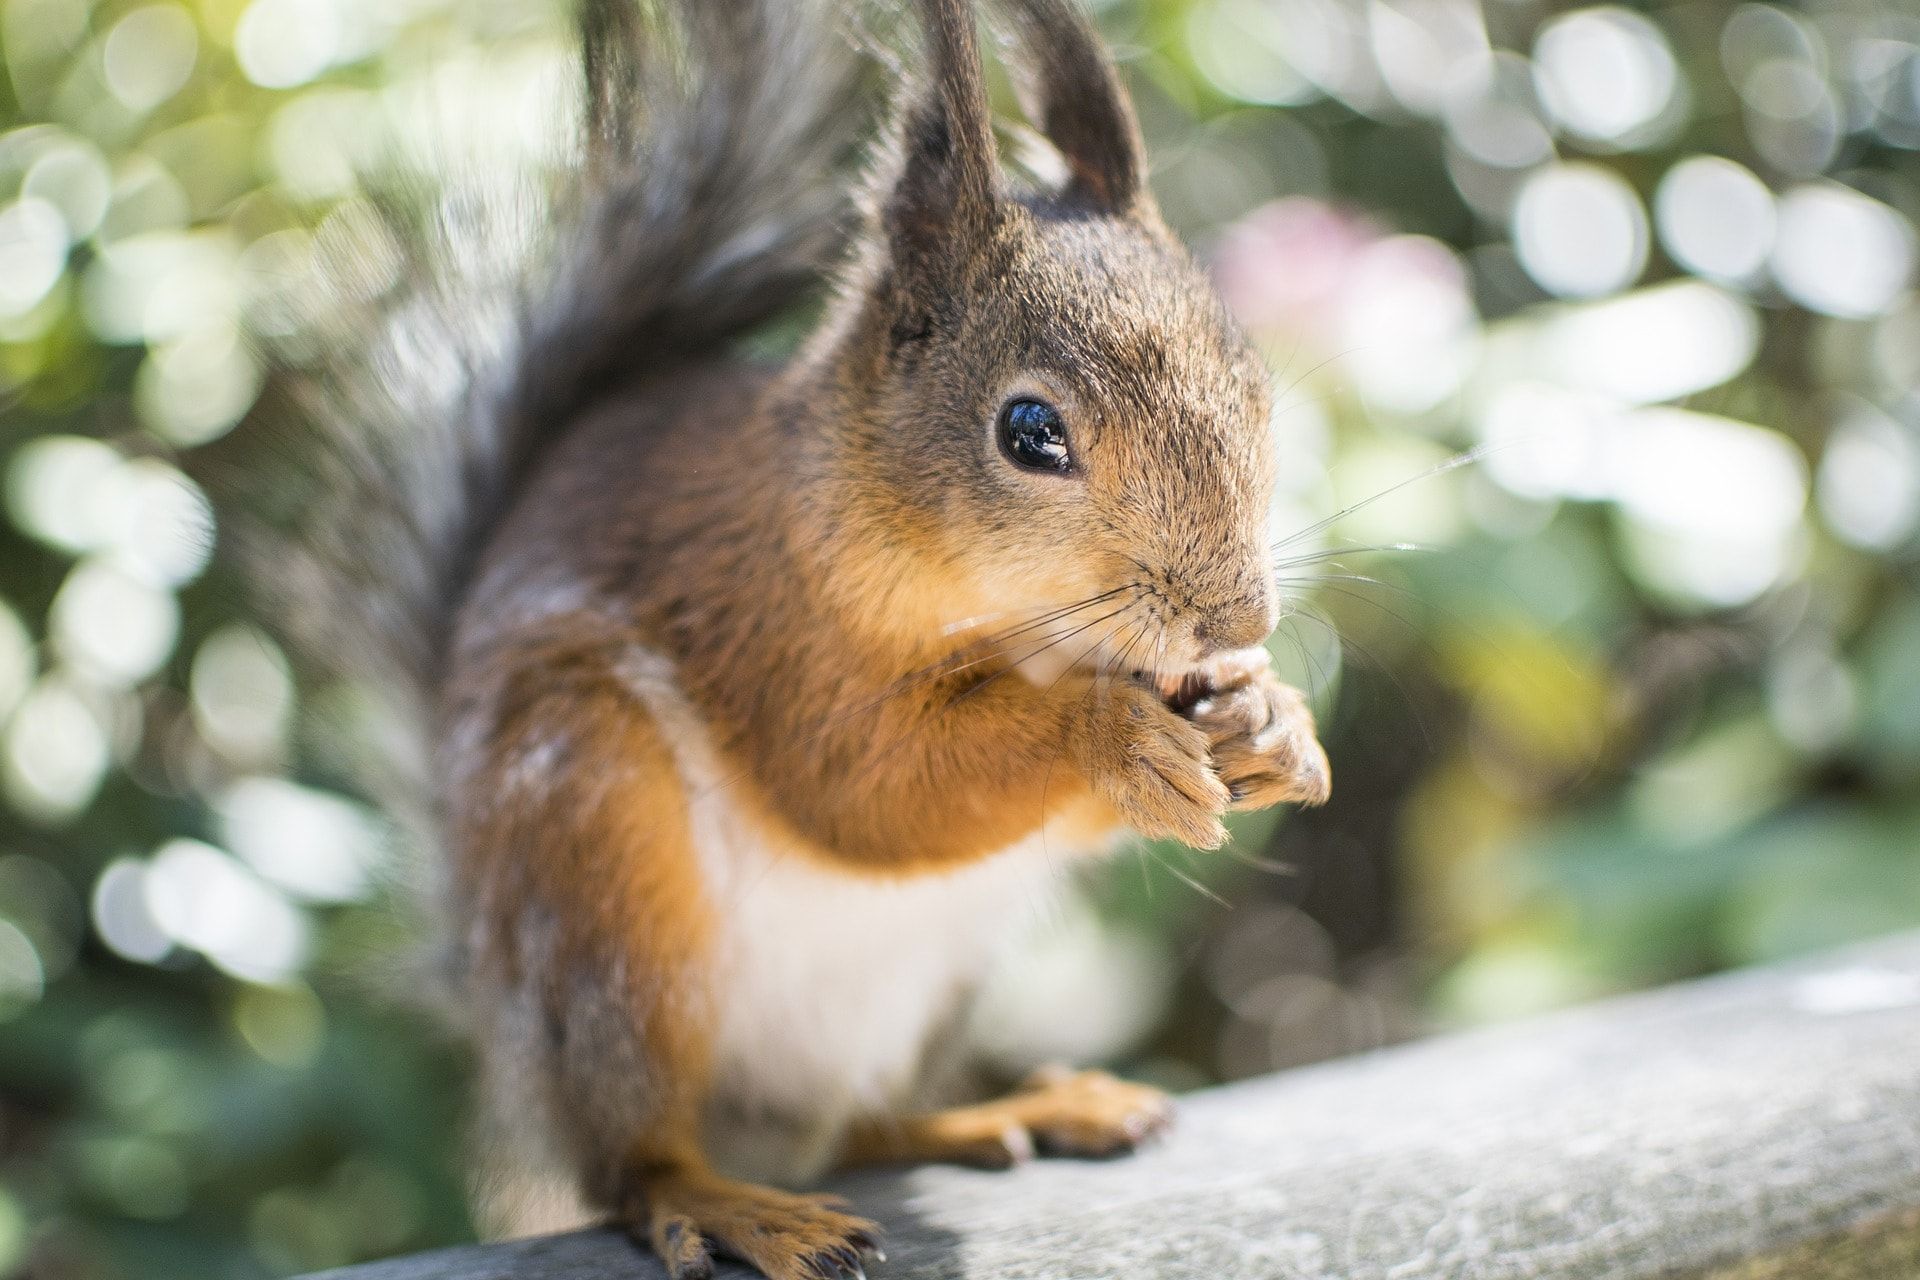 Photo of a squirrel feeding